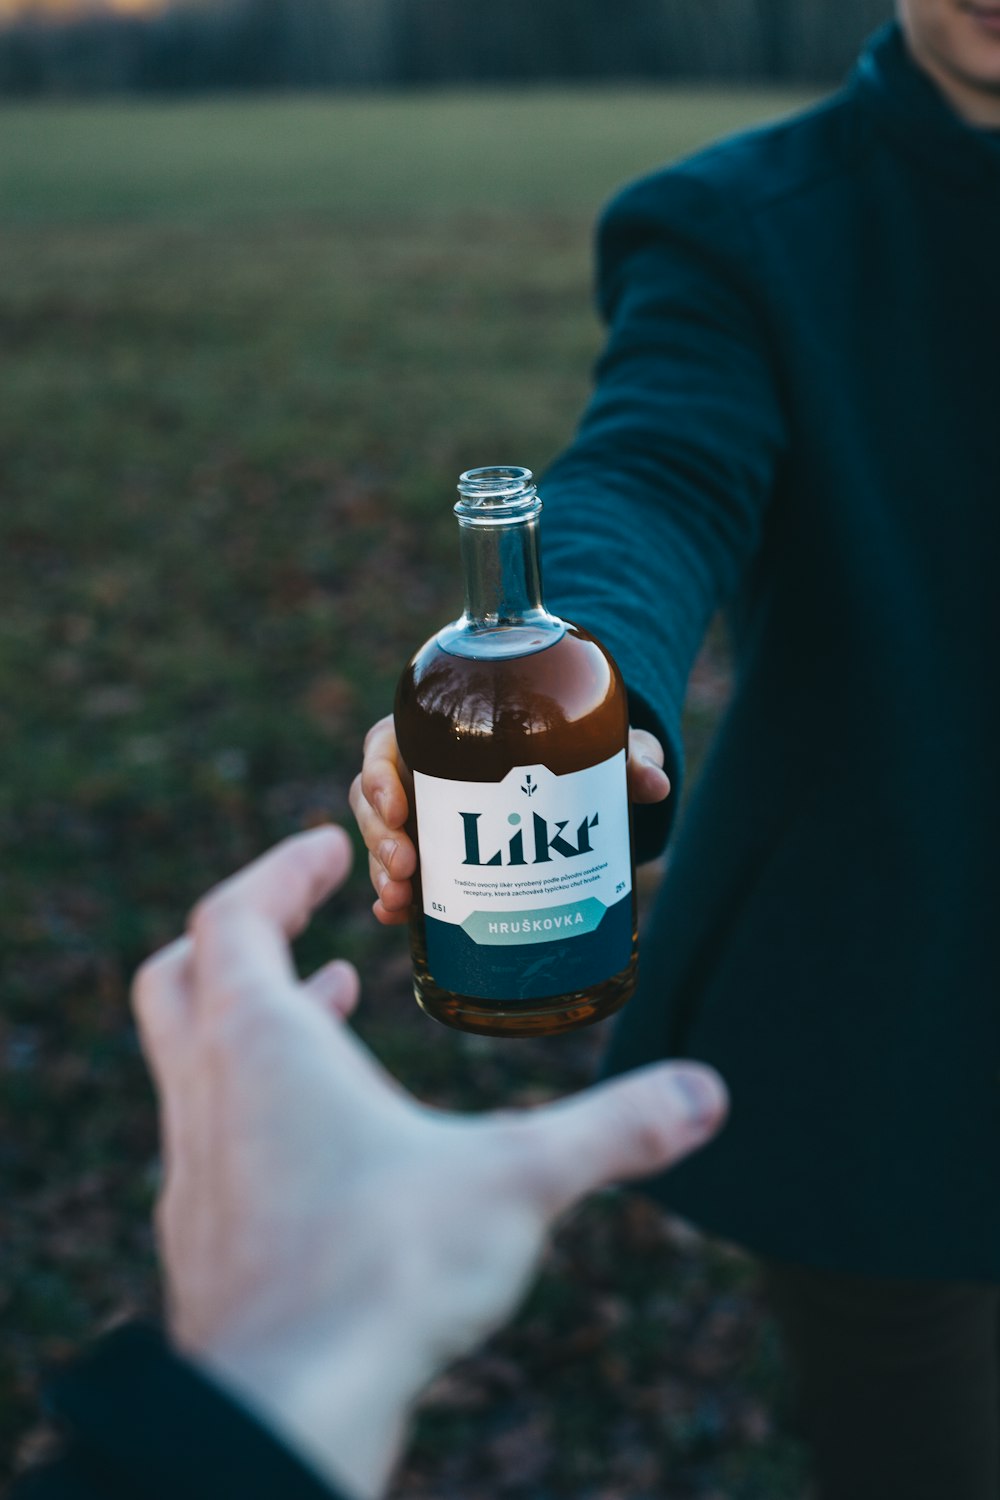 Likr glass bottle